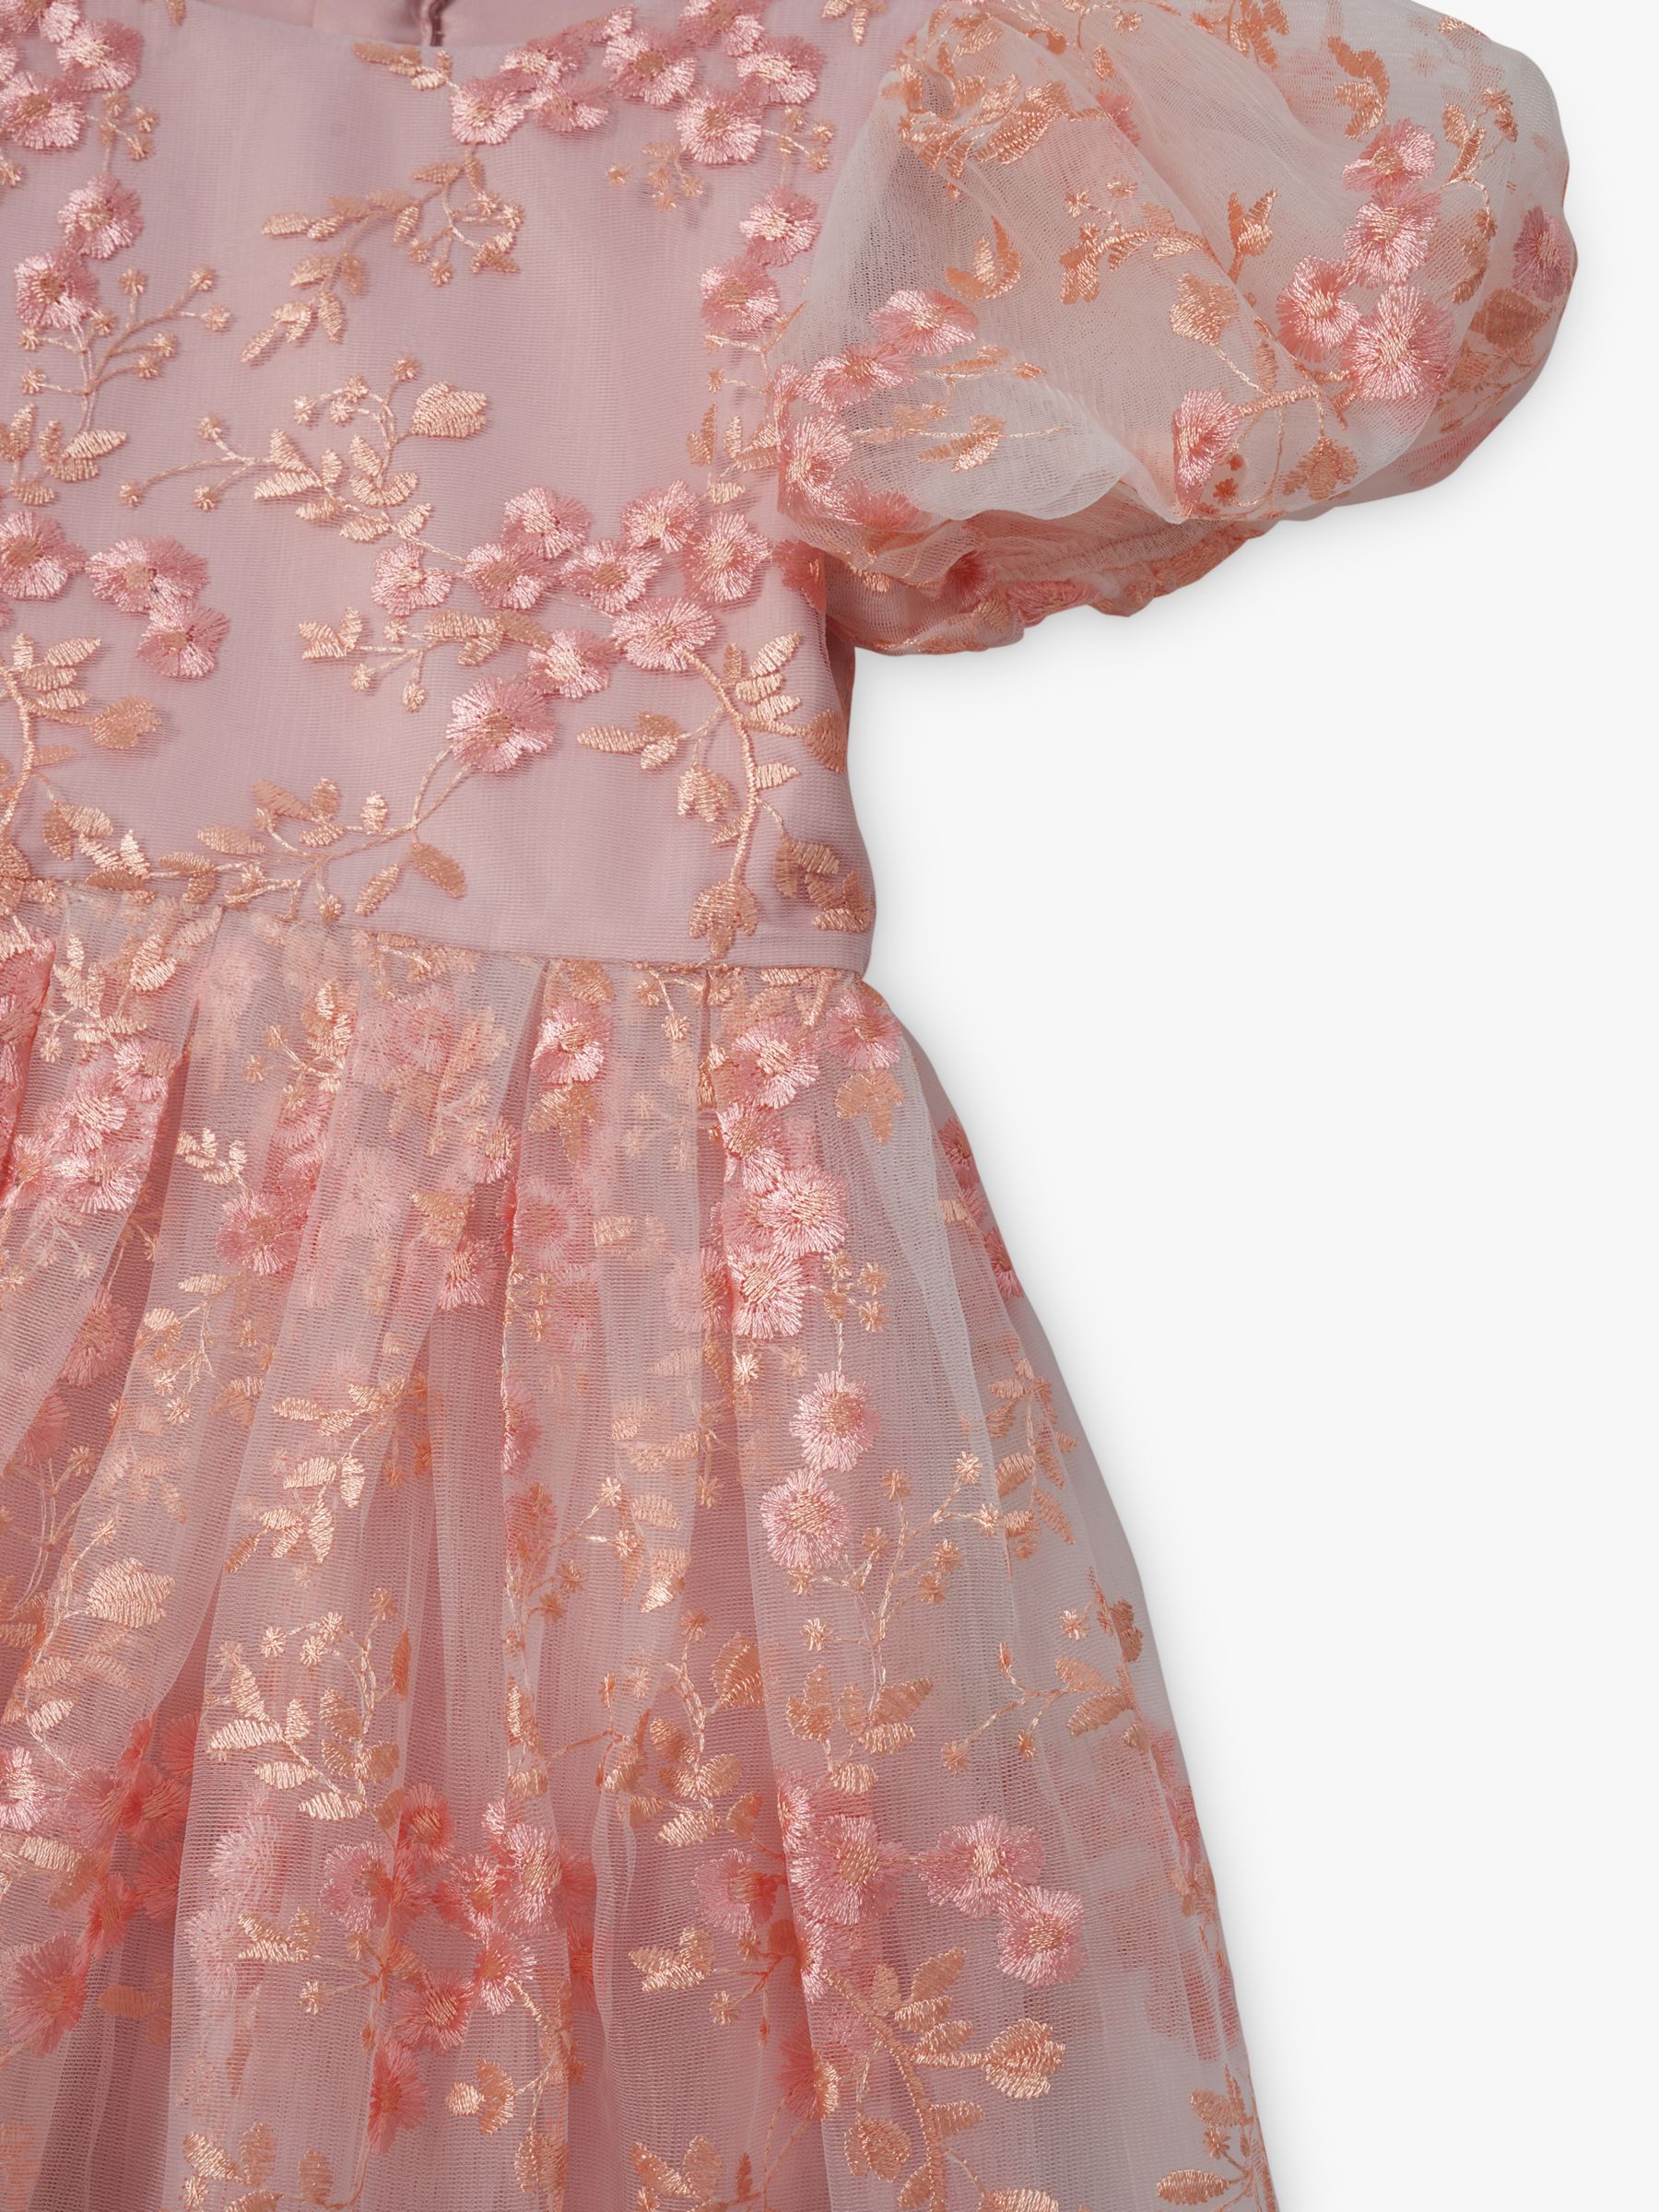 Buy Angel & Rocket Kids' Noemie Floral Embroidered Dress, Pink Online at johnlewis.com